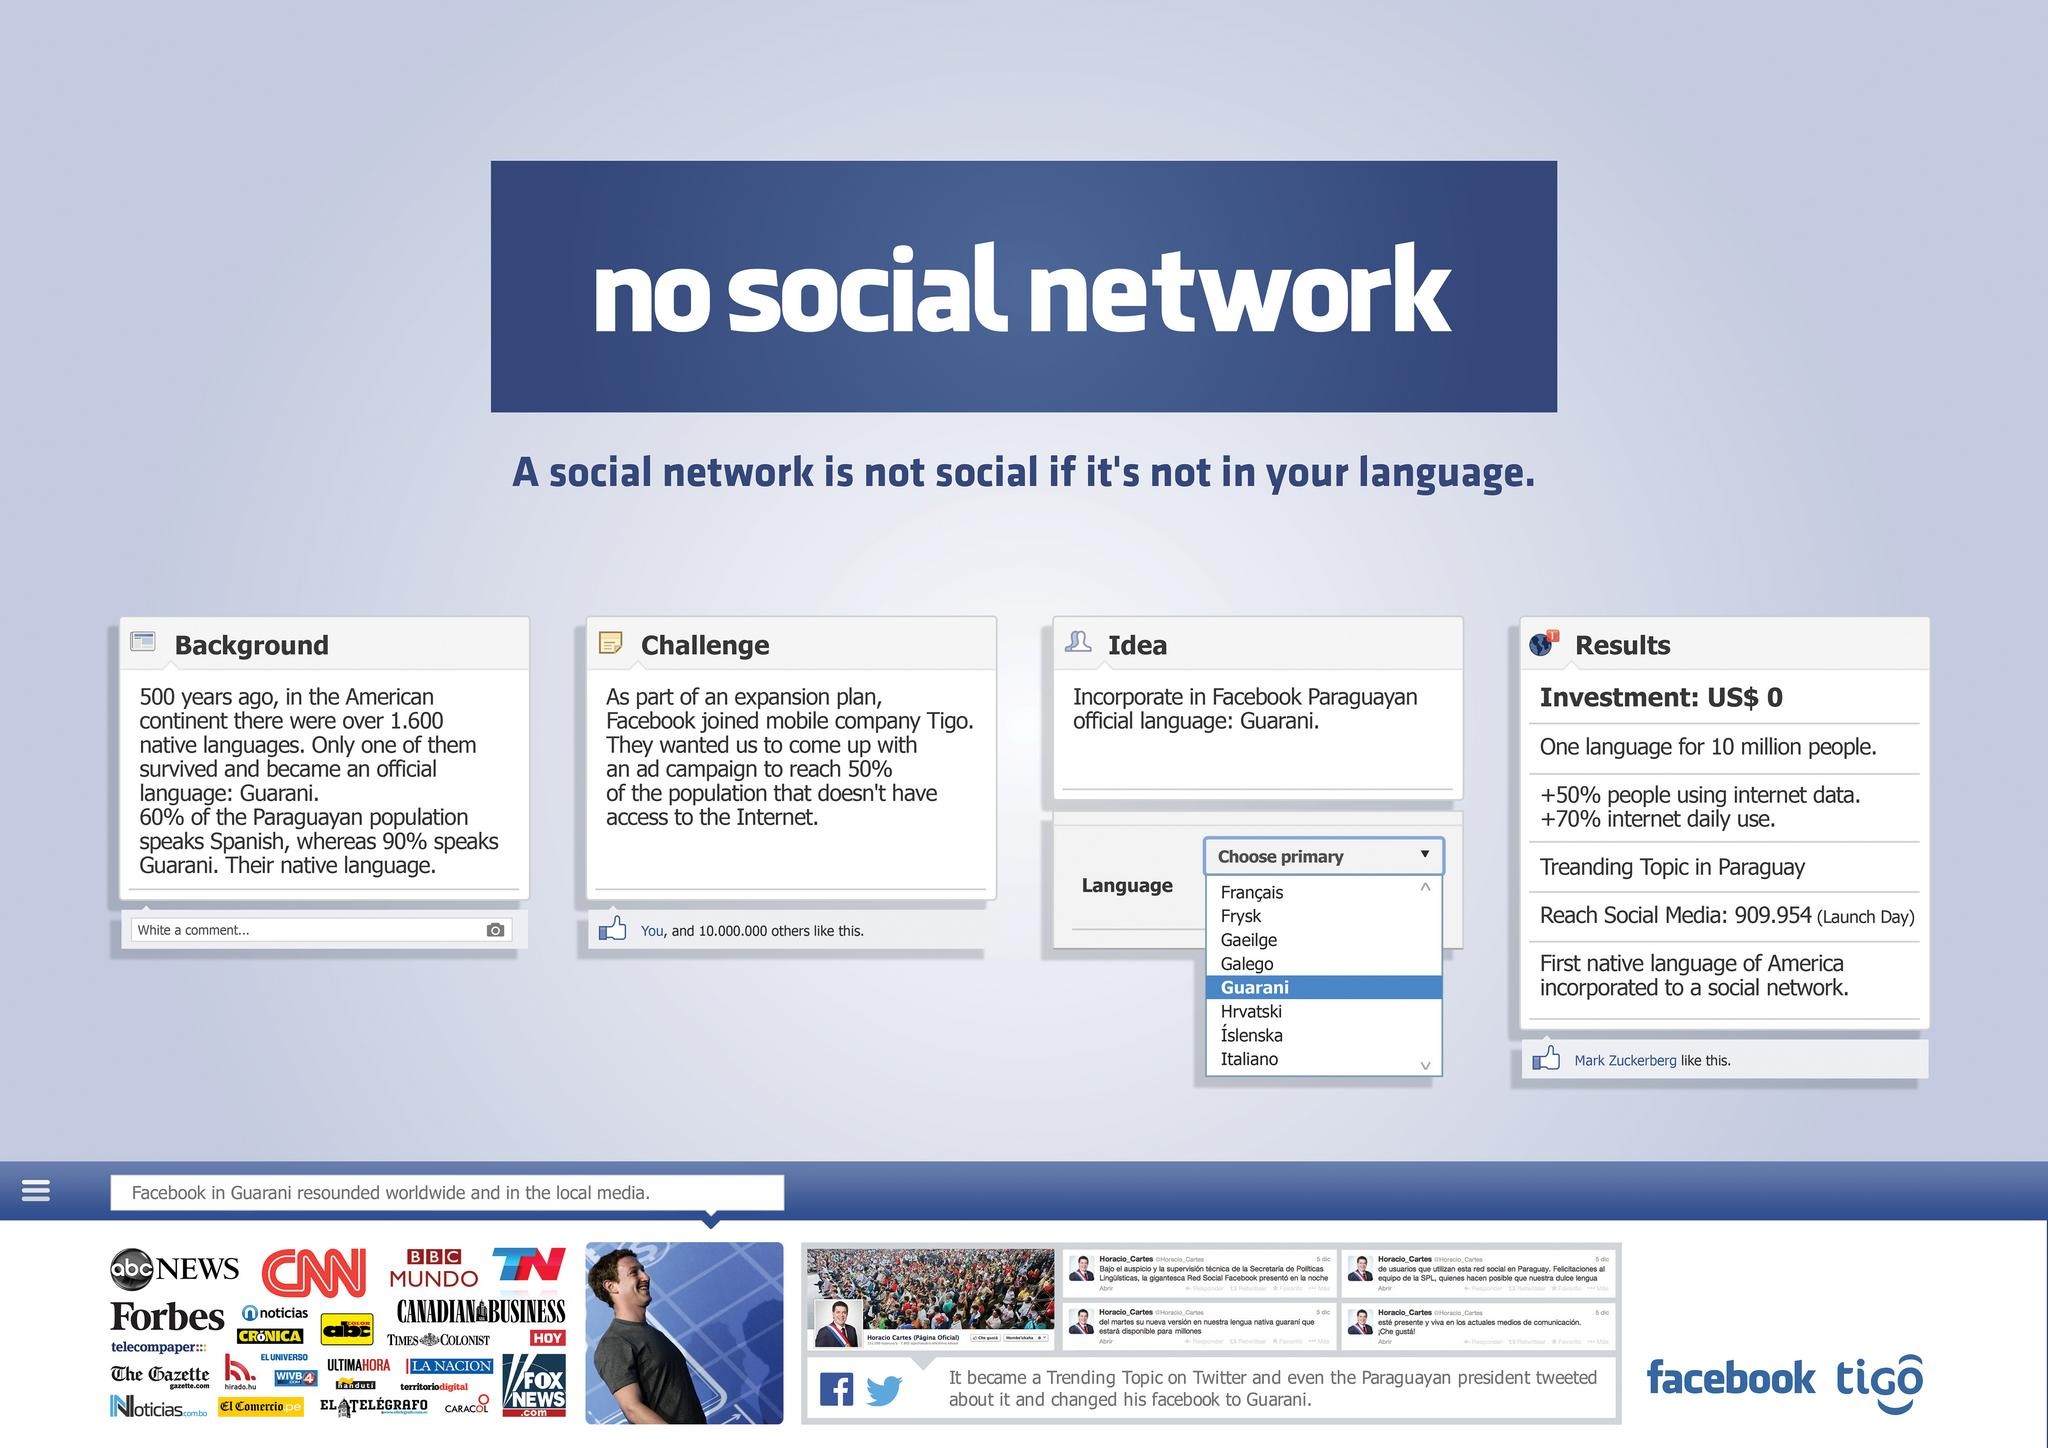 NO SOCIAL NETWORK